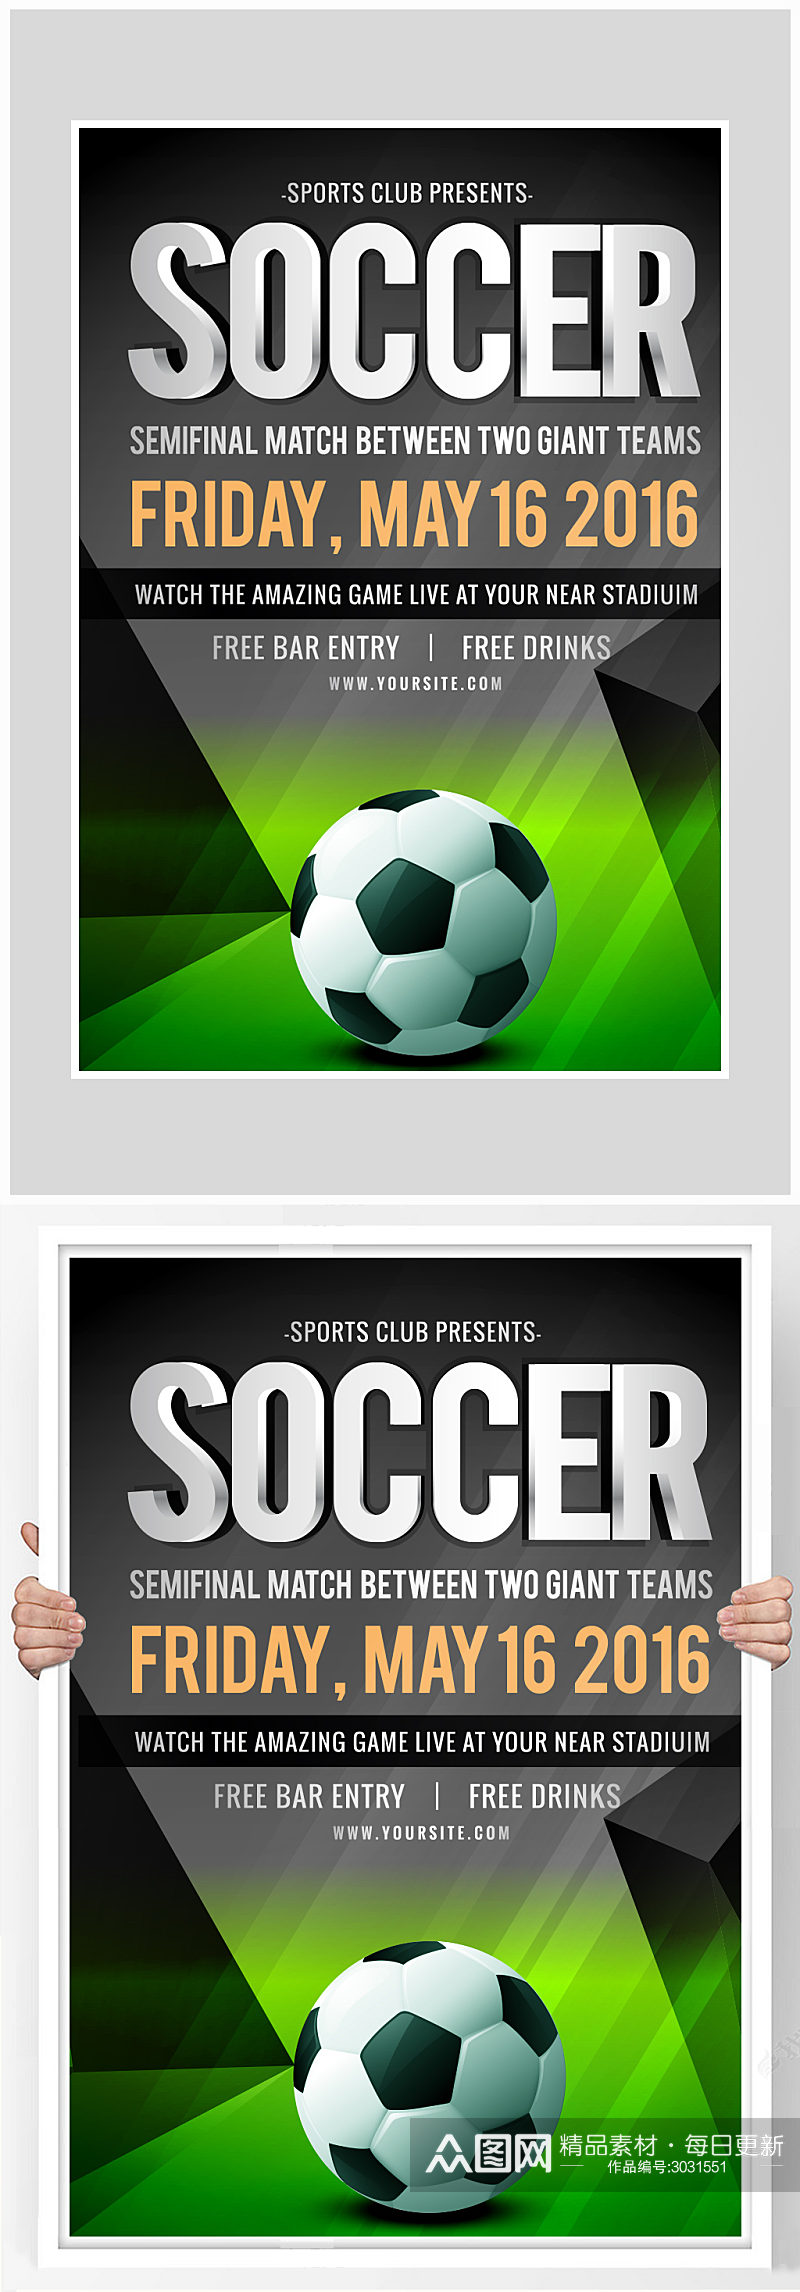 创意足球运功训练比赛海报设计素材